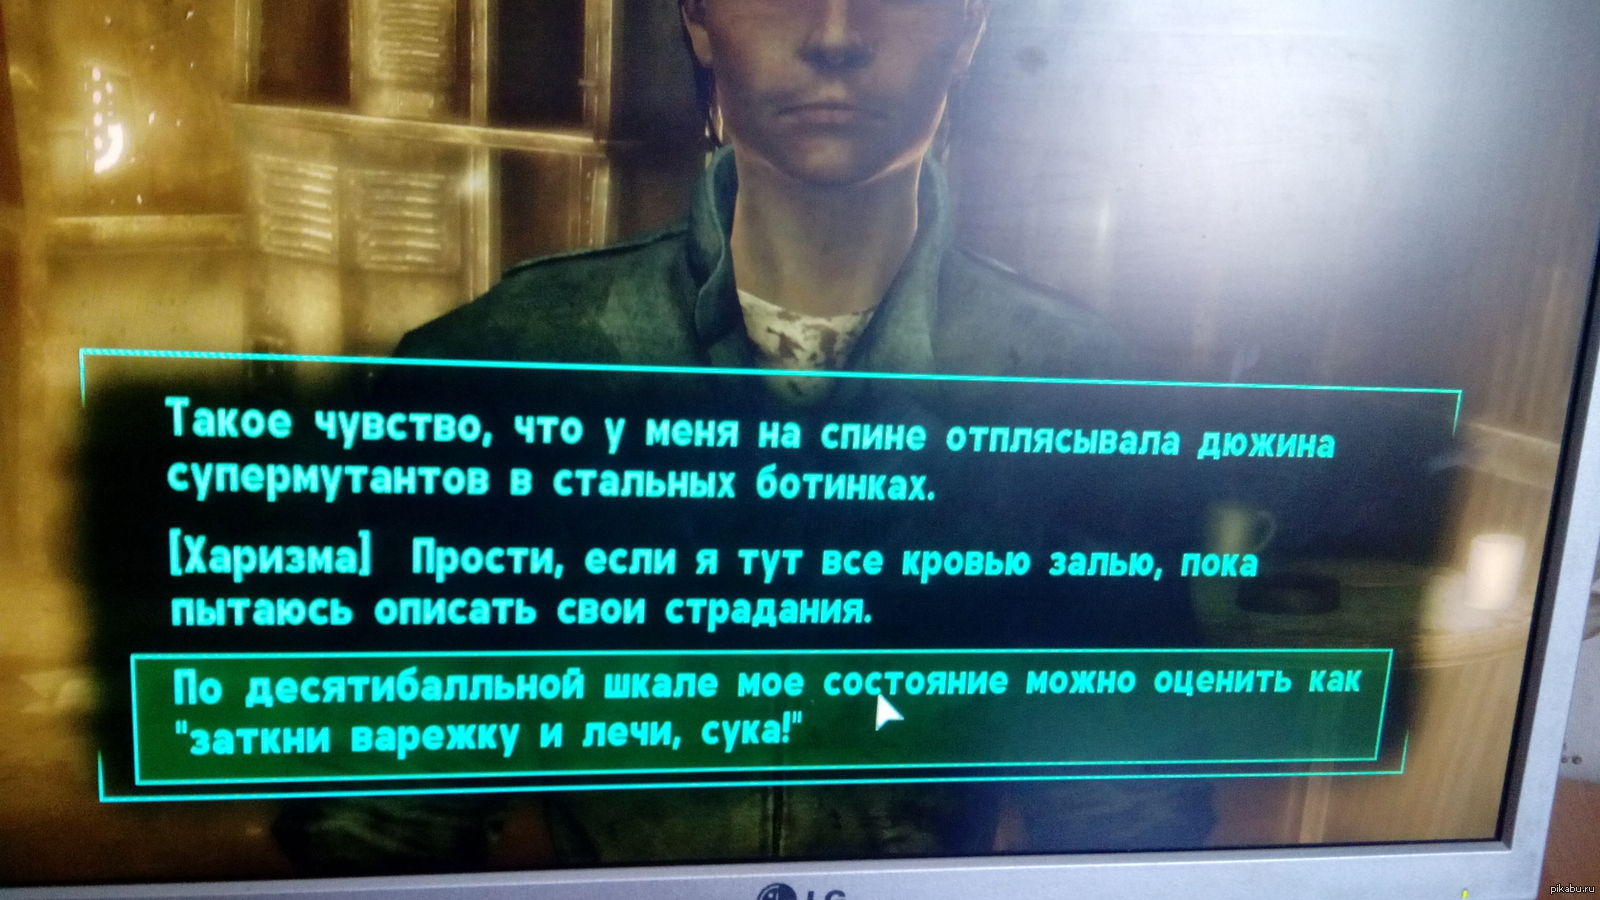 Fallout 4 диалоги как в fallout 3 фото 40